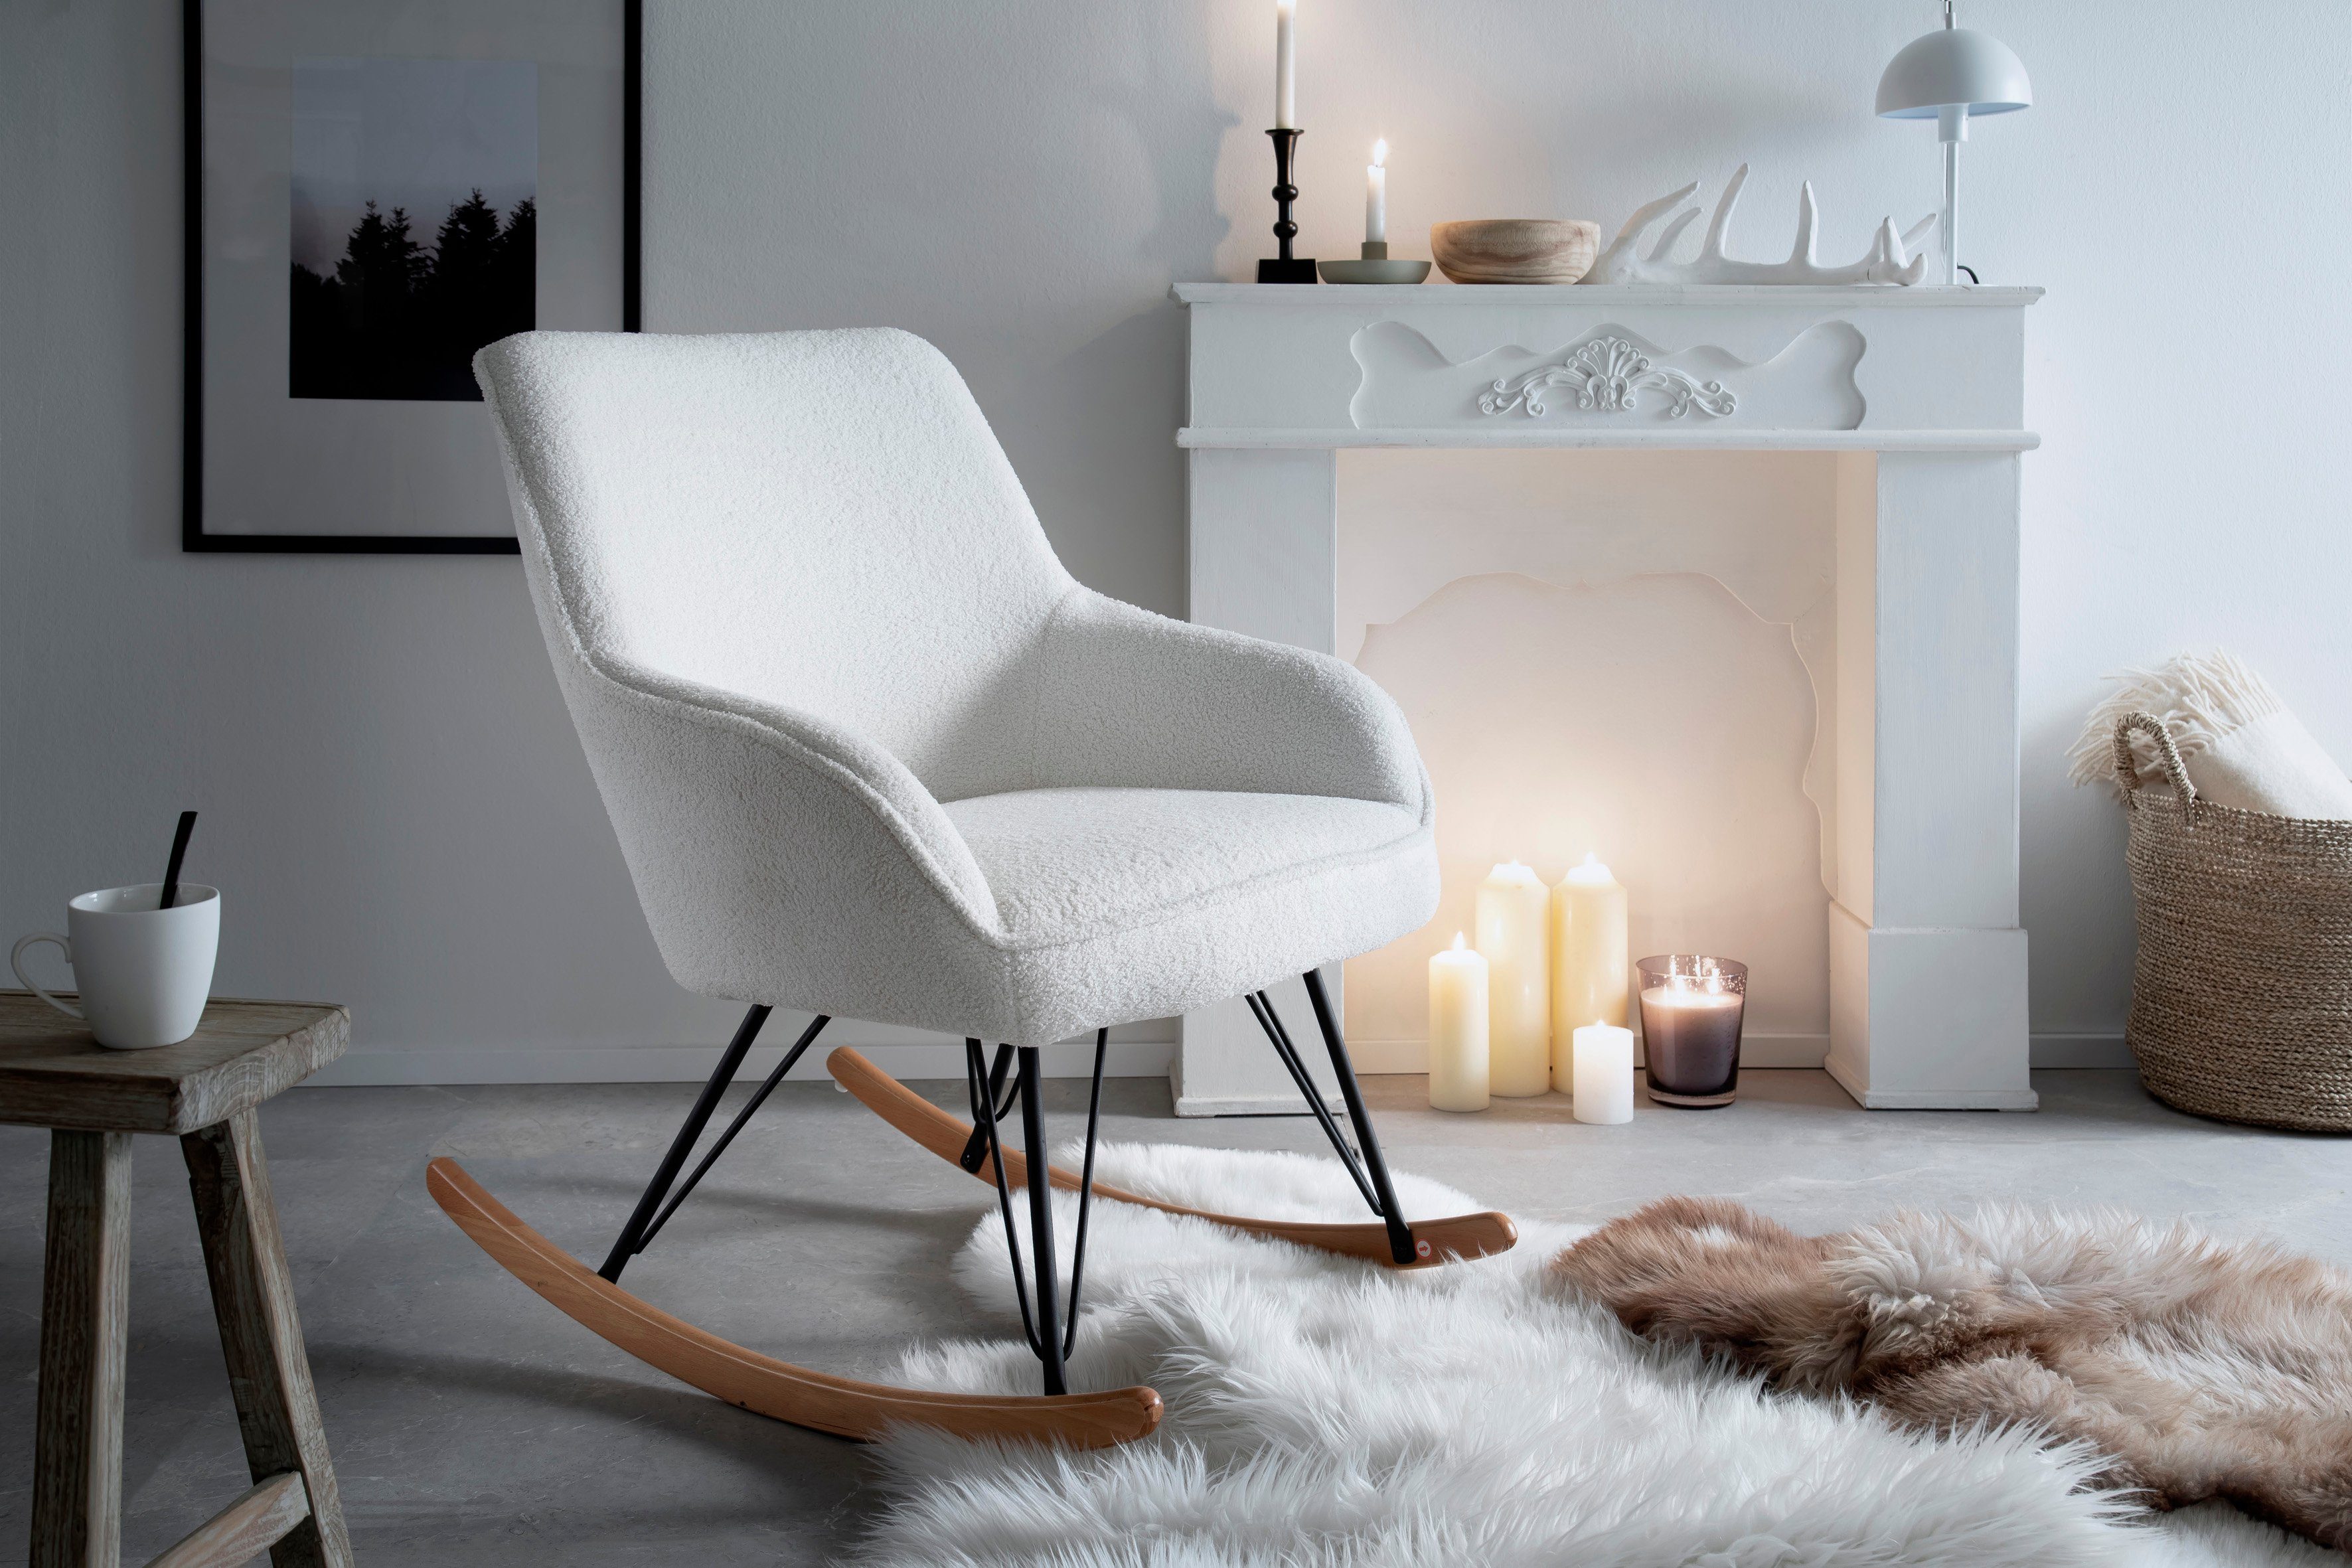 furniture mit Schaukelstuhl Weiß bis MCA cm belastbar, Kufenstuhl Komfortsitzhöhe 49 | Weiß Armlehne, kg Oran, 120